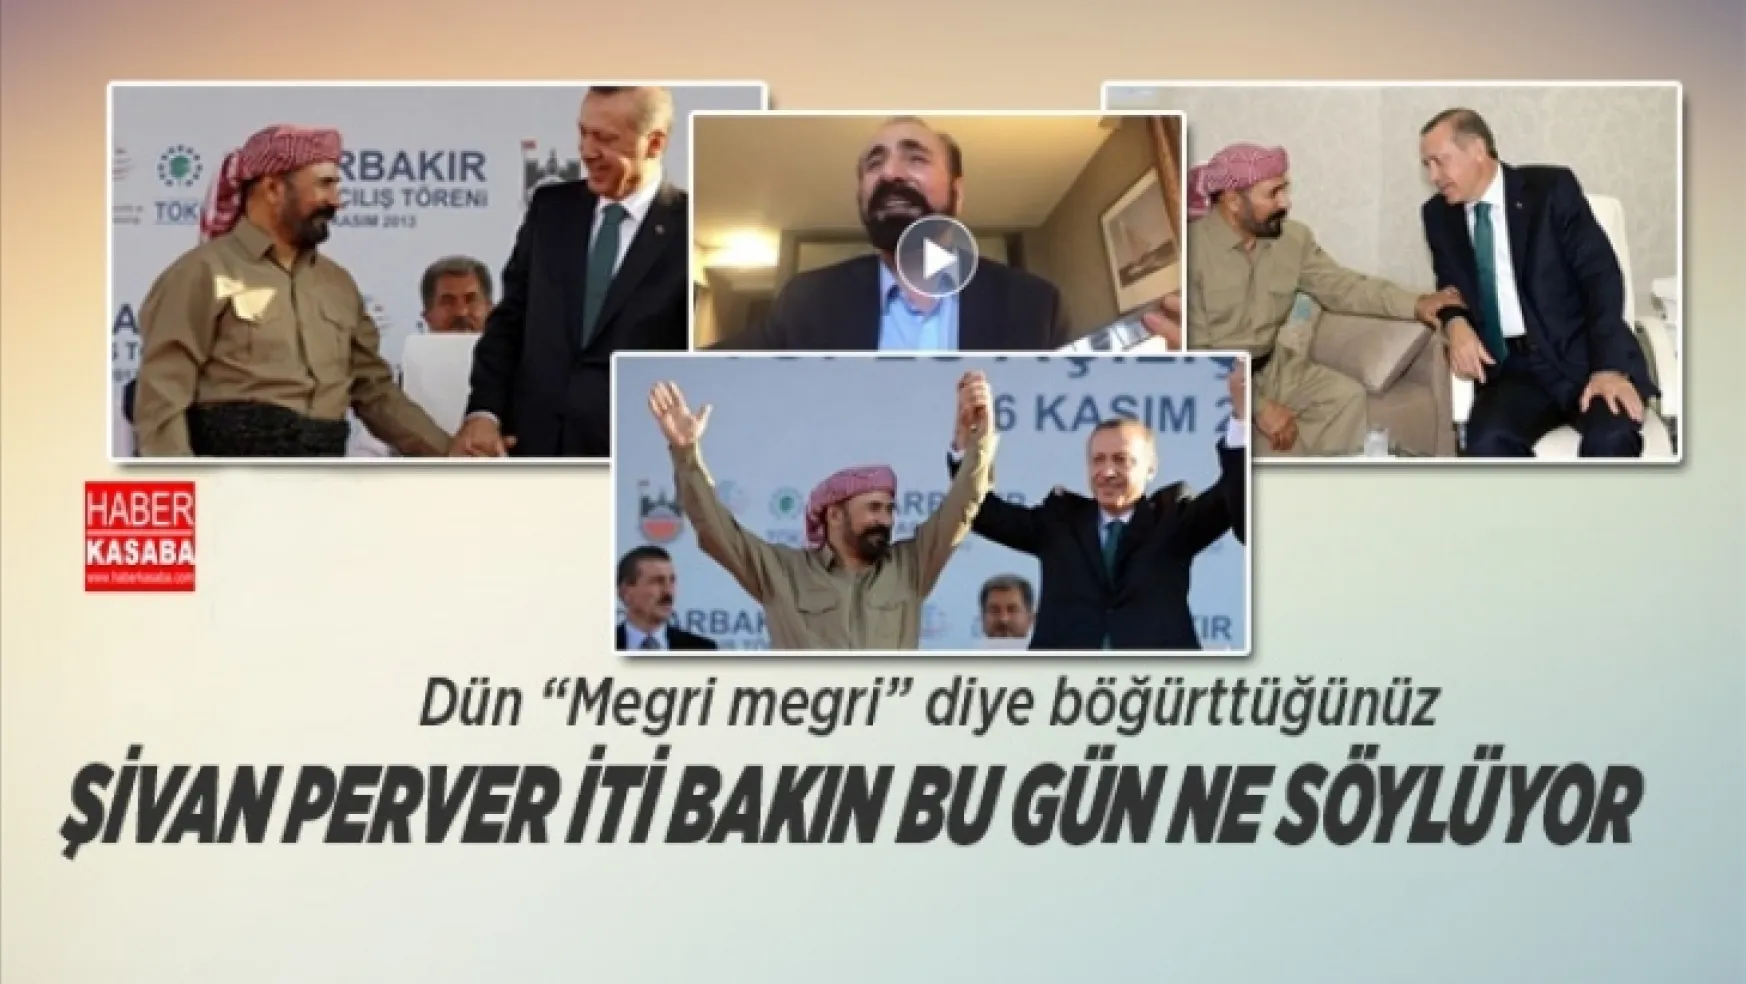 Erdoğanla el ele göz göze olan Şivan Perver bakın bu gün ne söylüyor